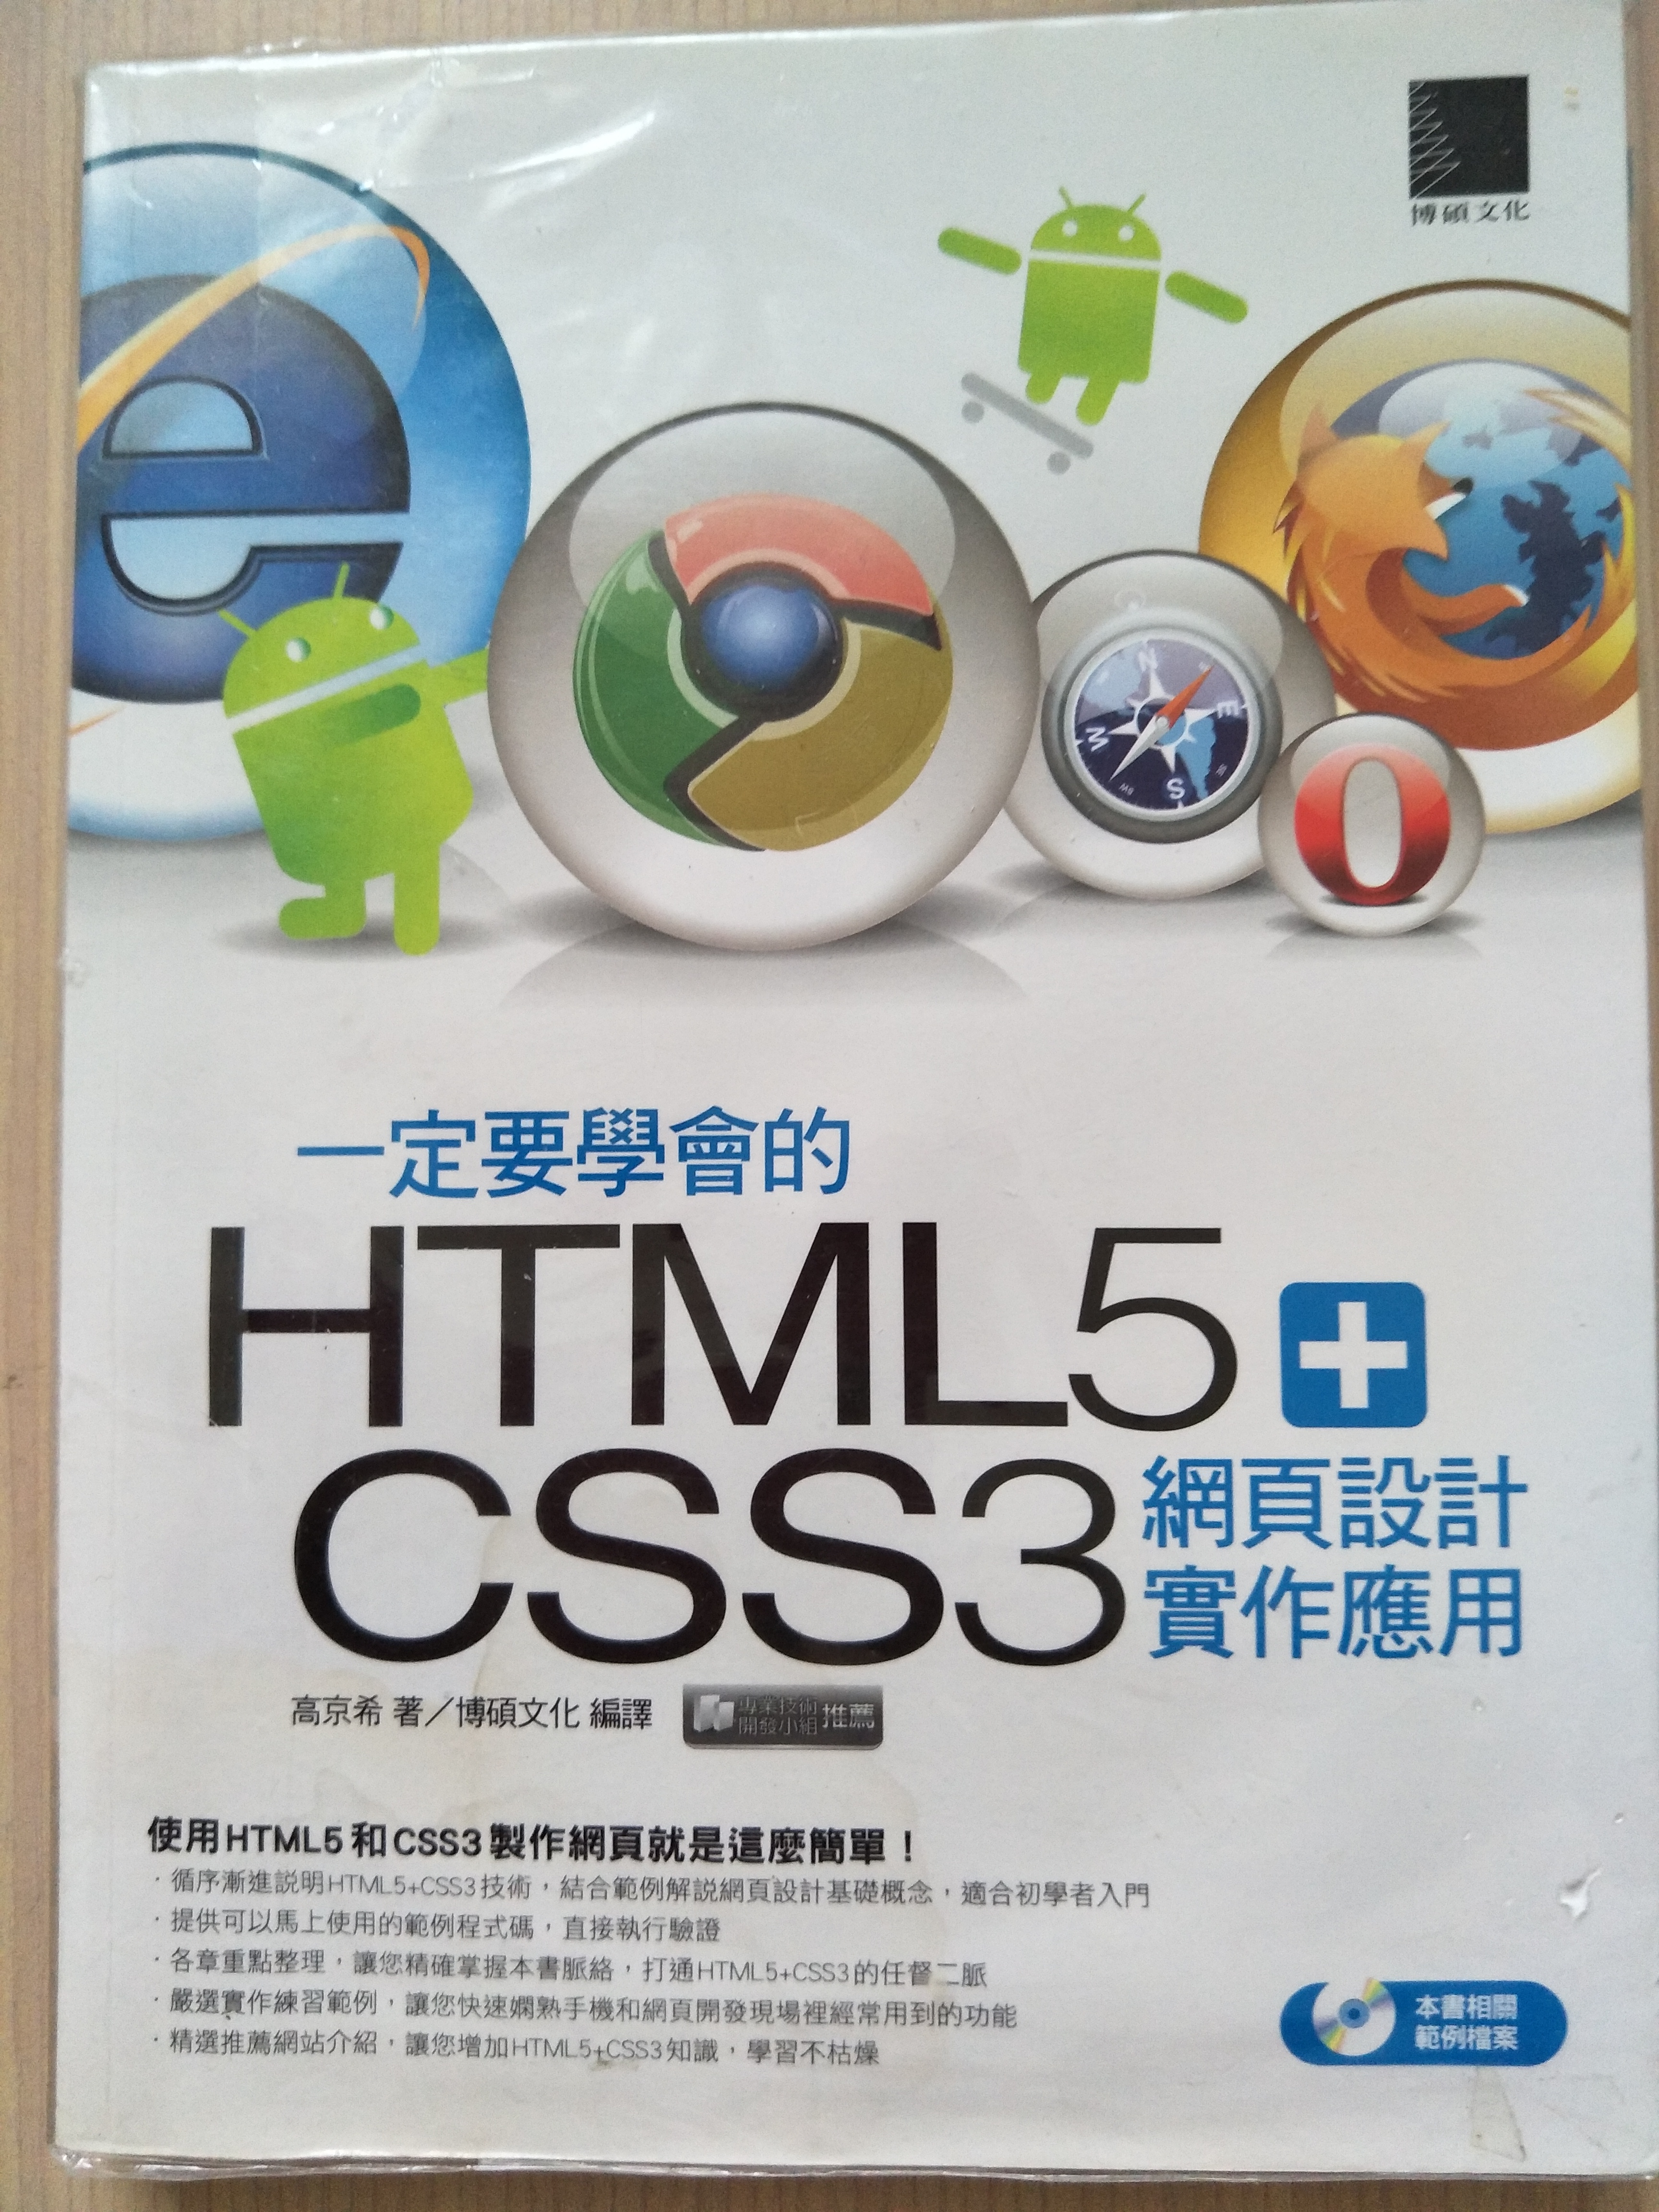 一定要學會的html5加上css3